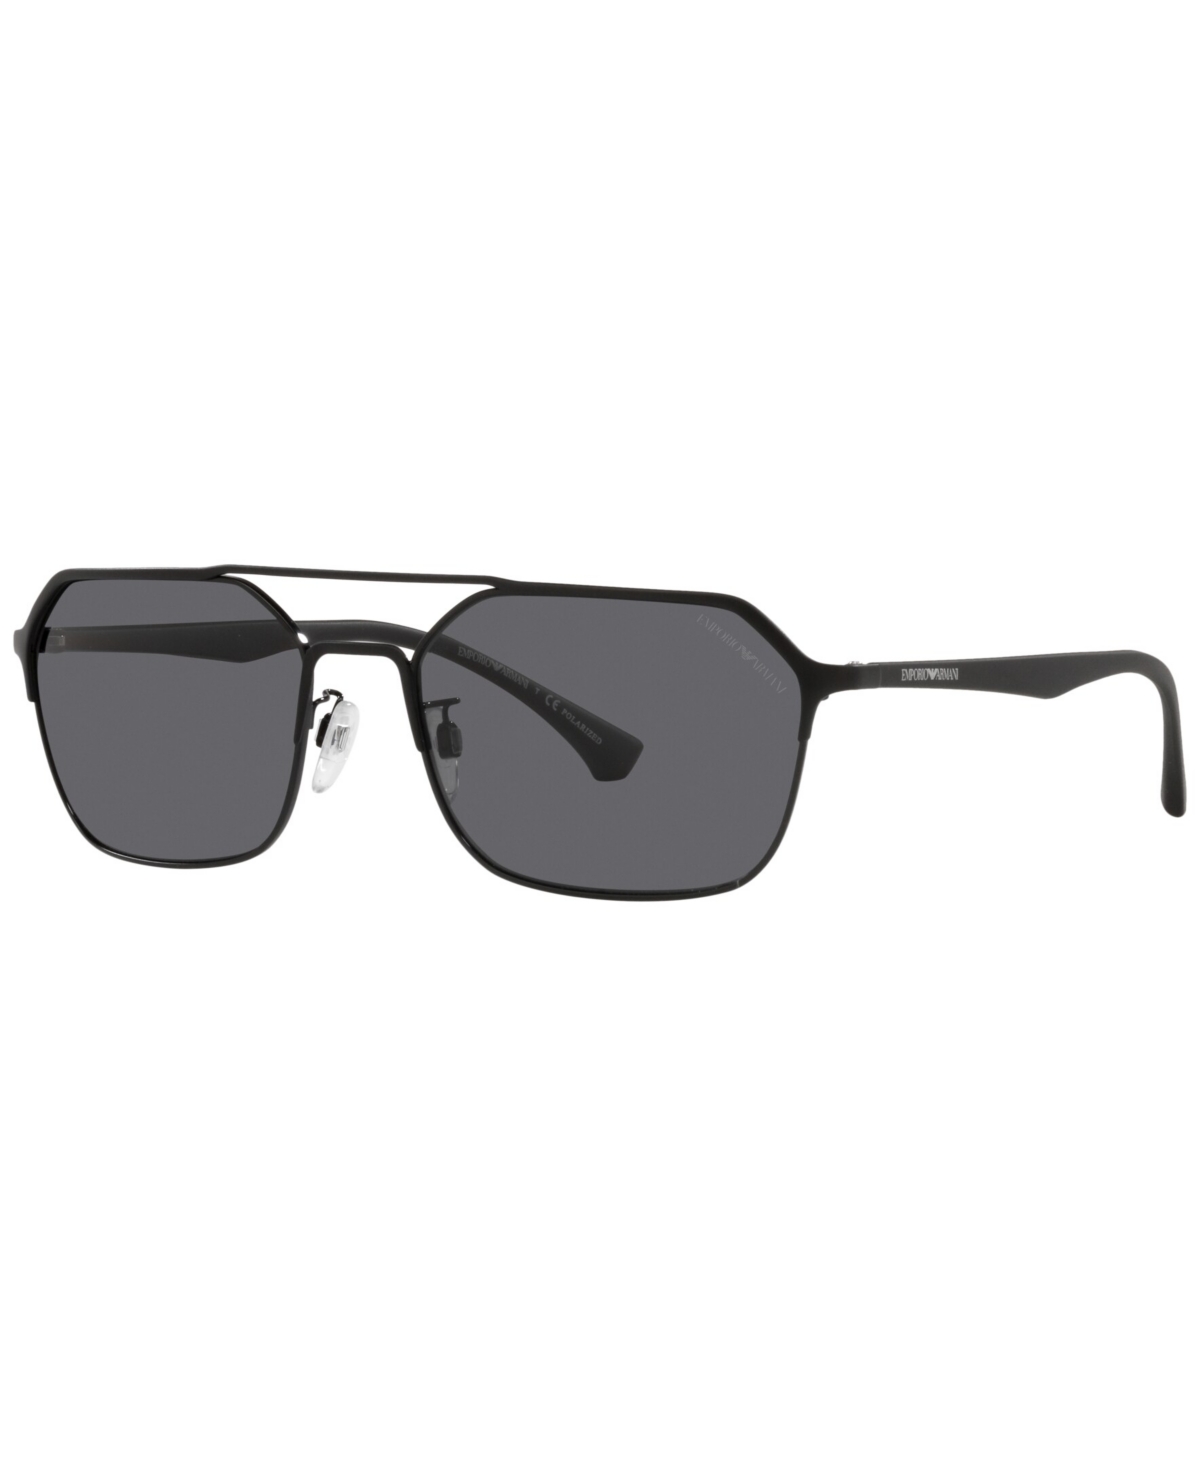 Emporio Armani Grey Geometric Mens Sunglasses Ea2119 323381 57 In Black / Grey